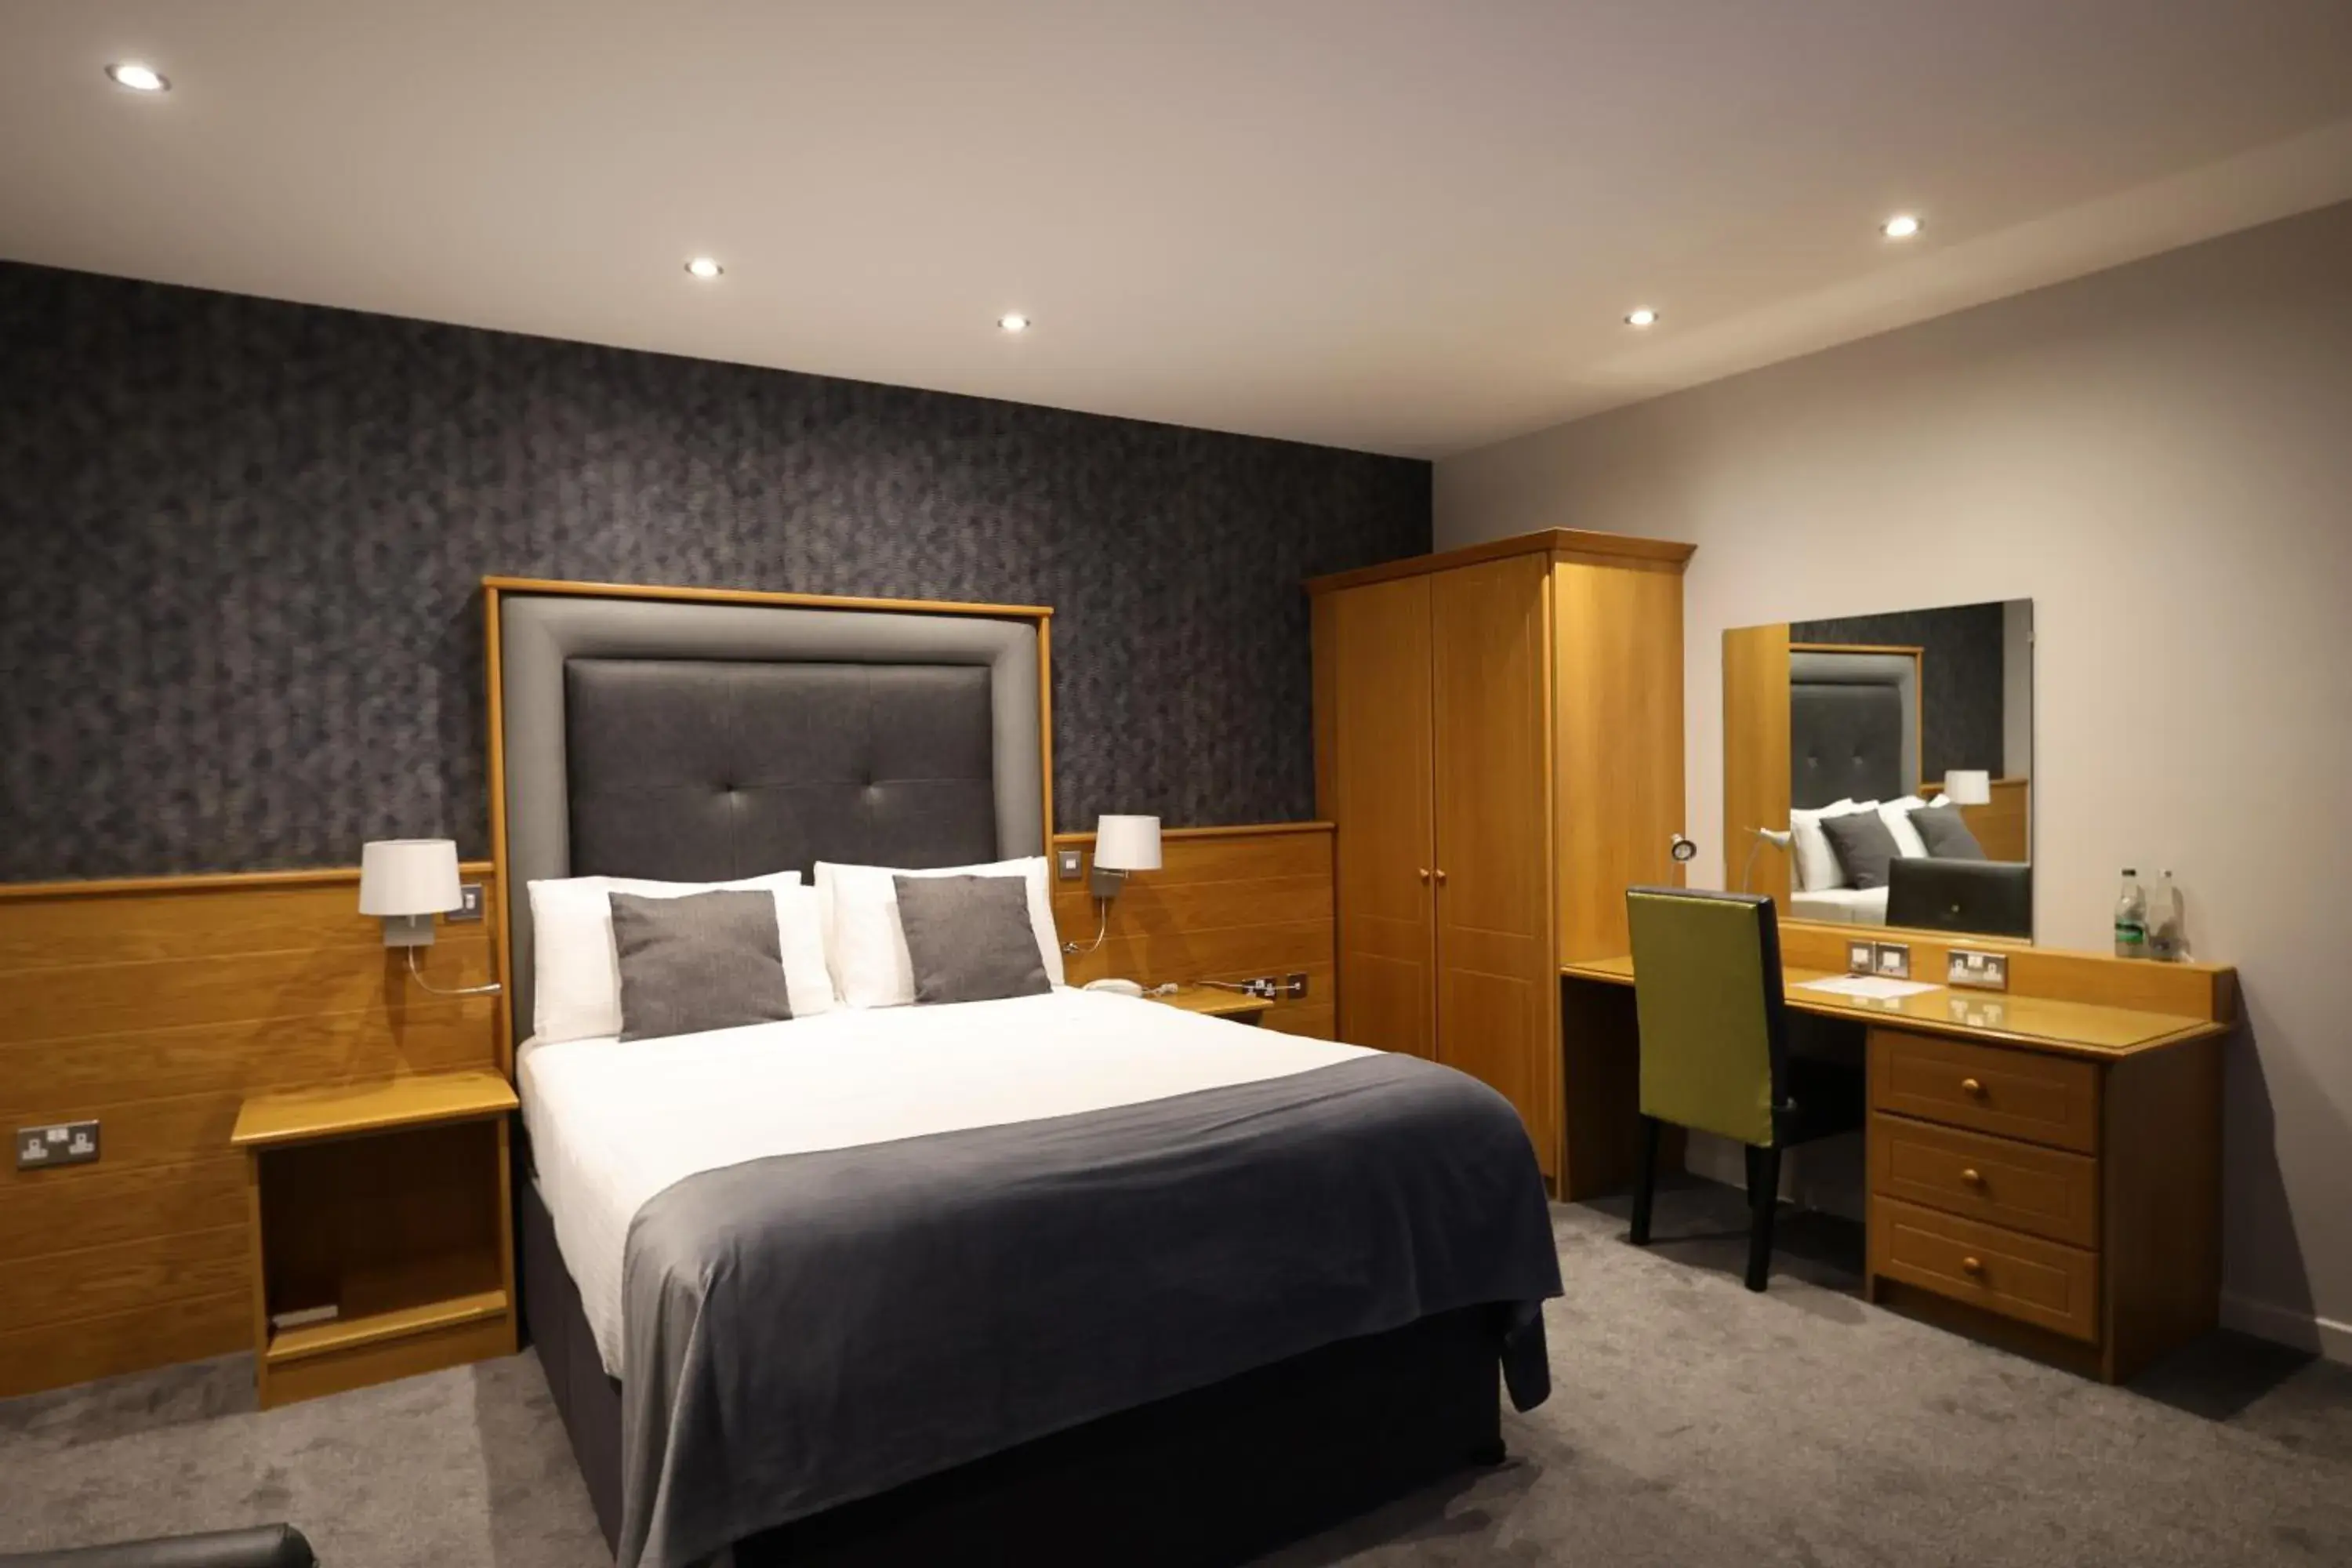 Bedroom, Bed in Glenavon House Hotel